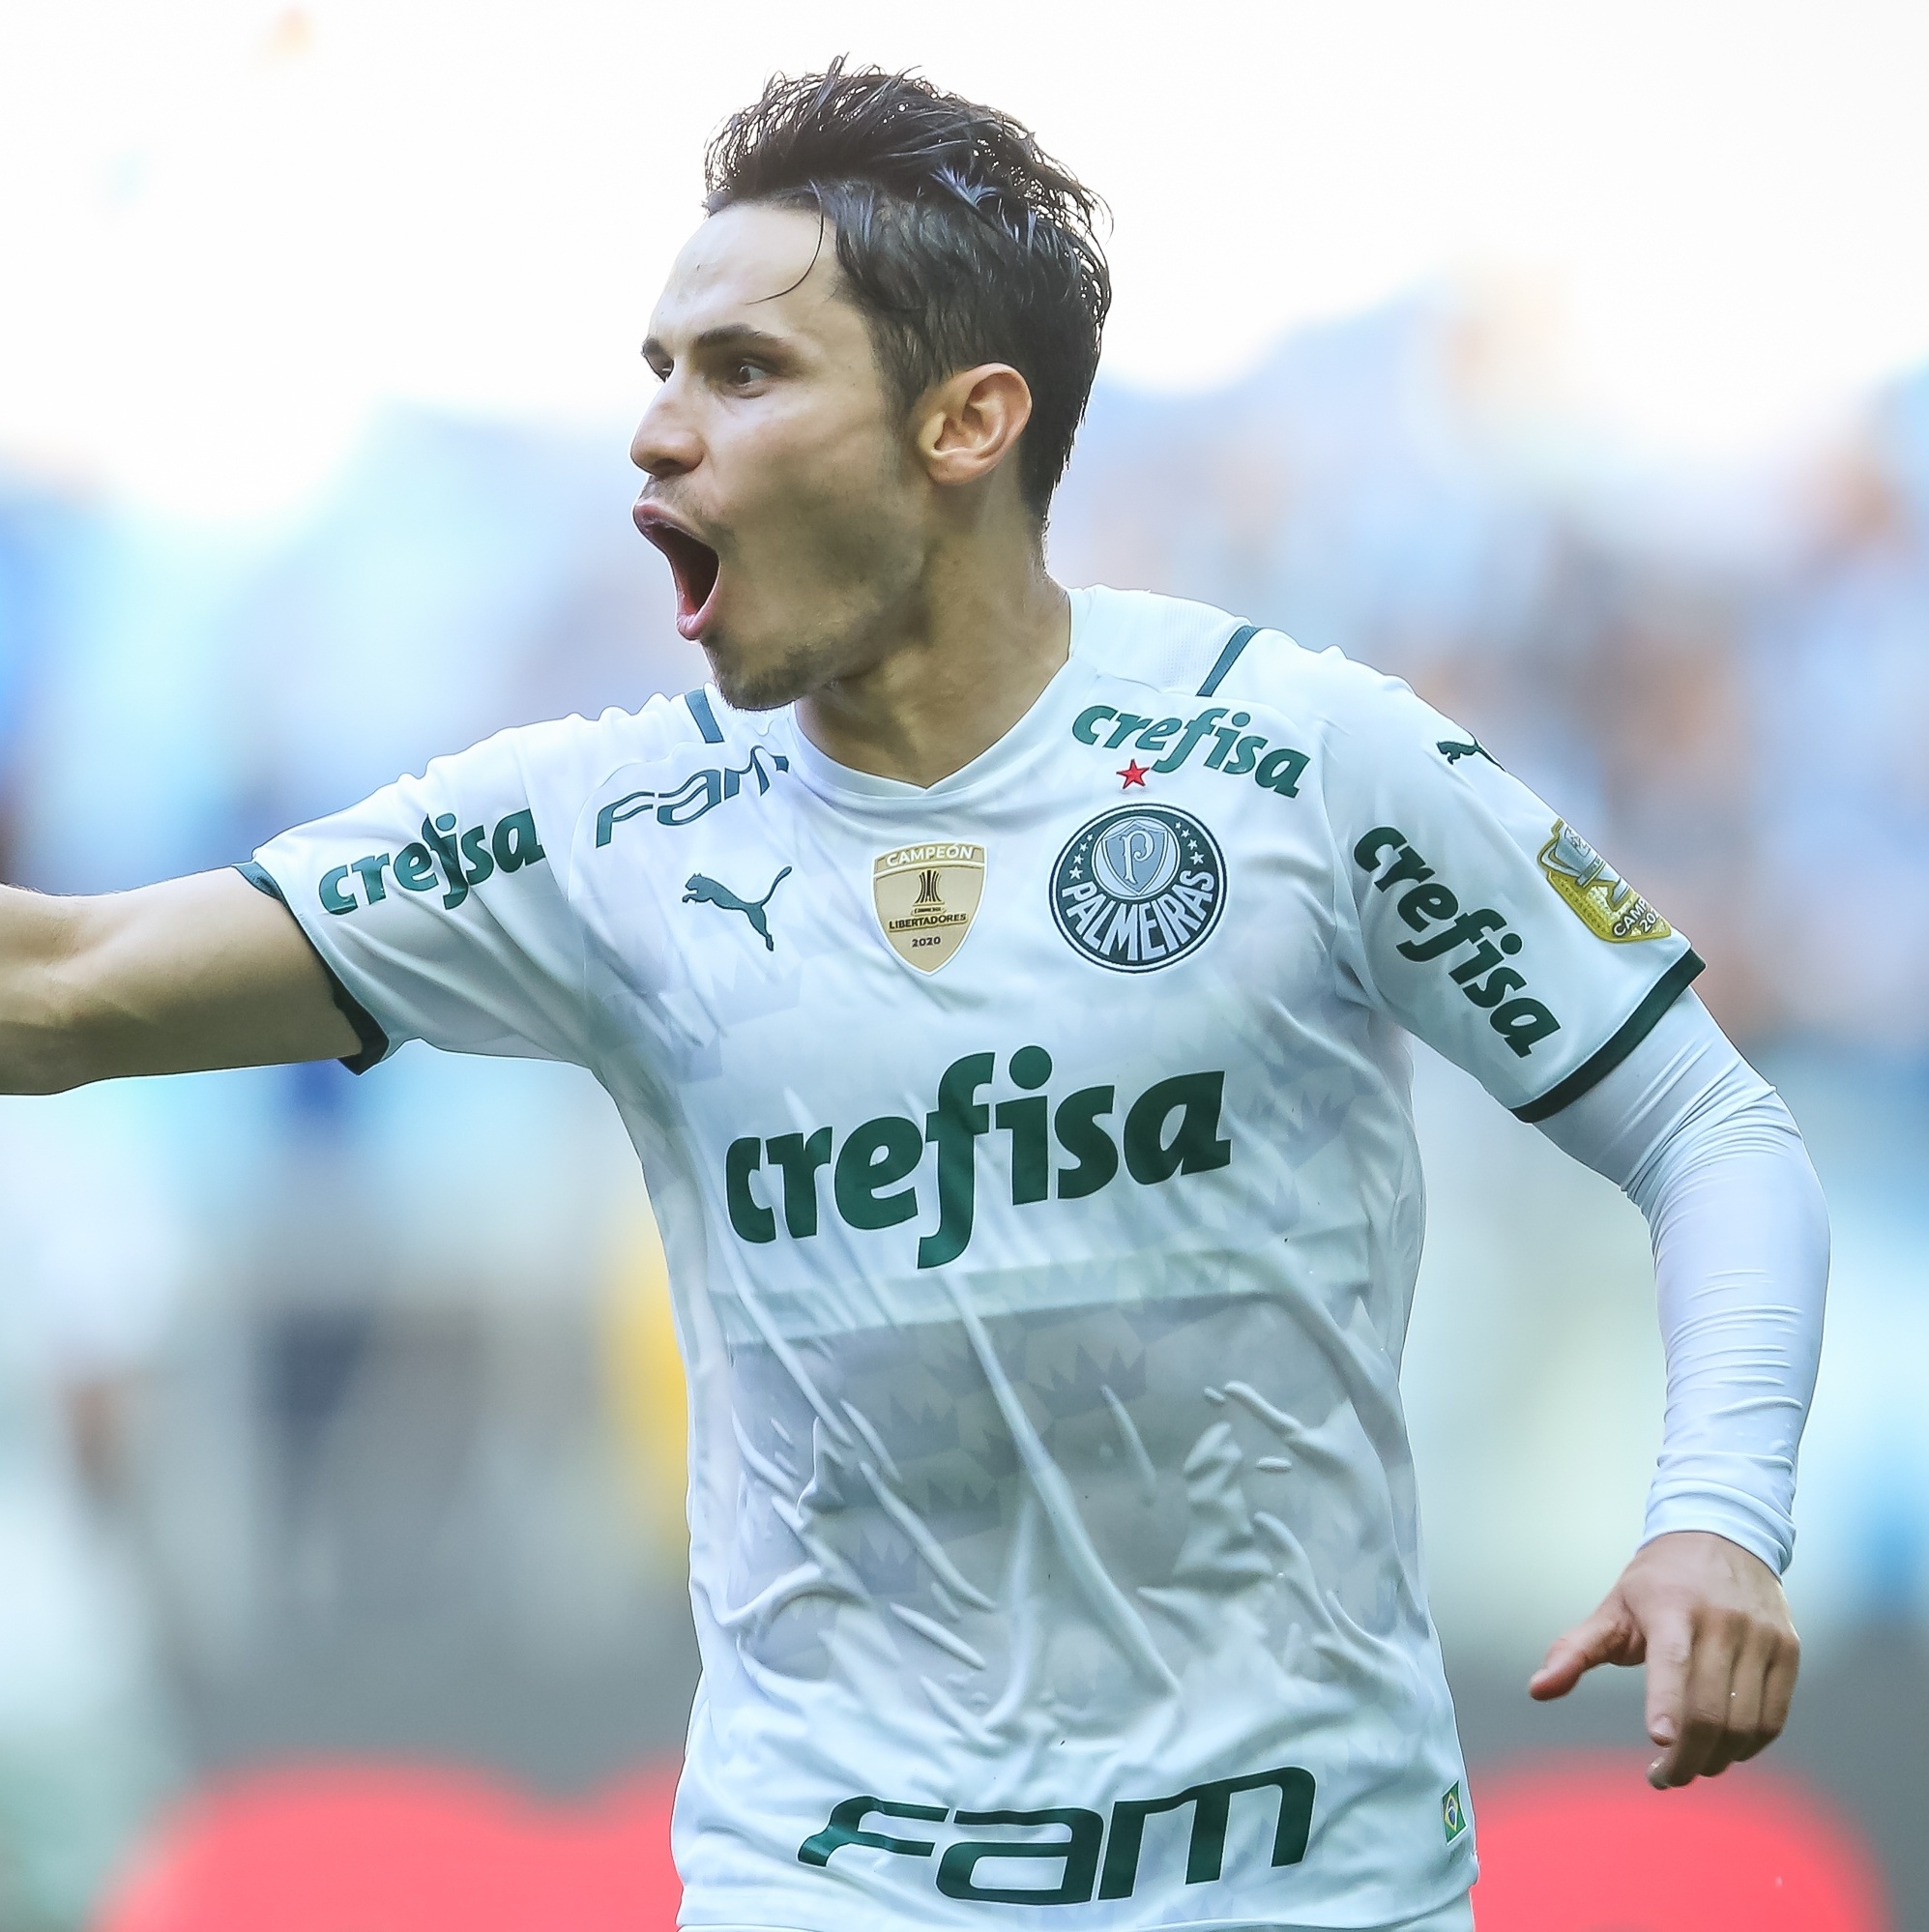 Em grande jogo, Palmeiras vira sobre o Bahia com gol nos acréscimos – ES  Brasil